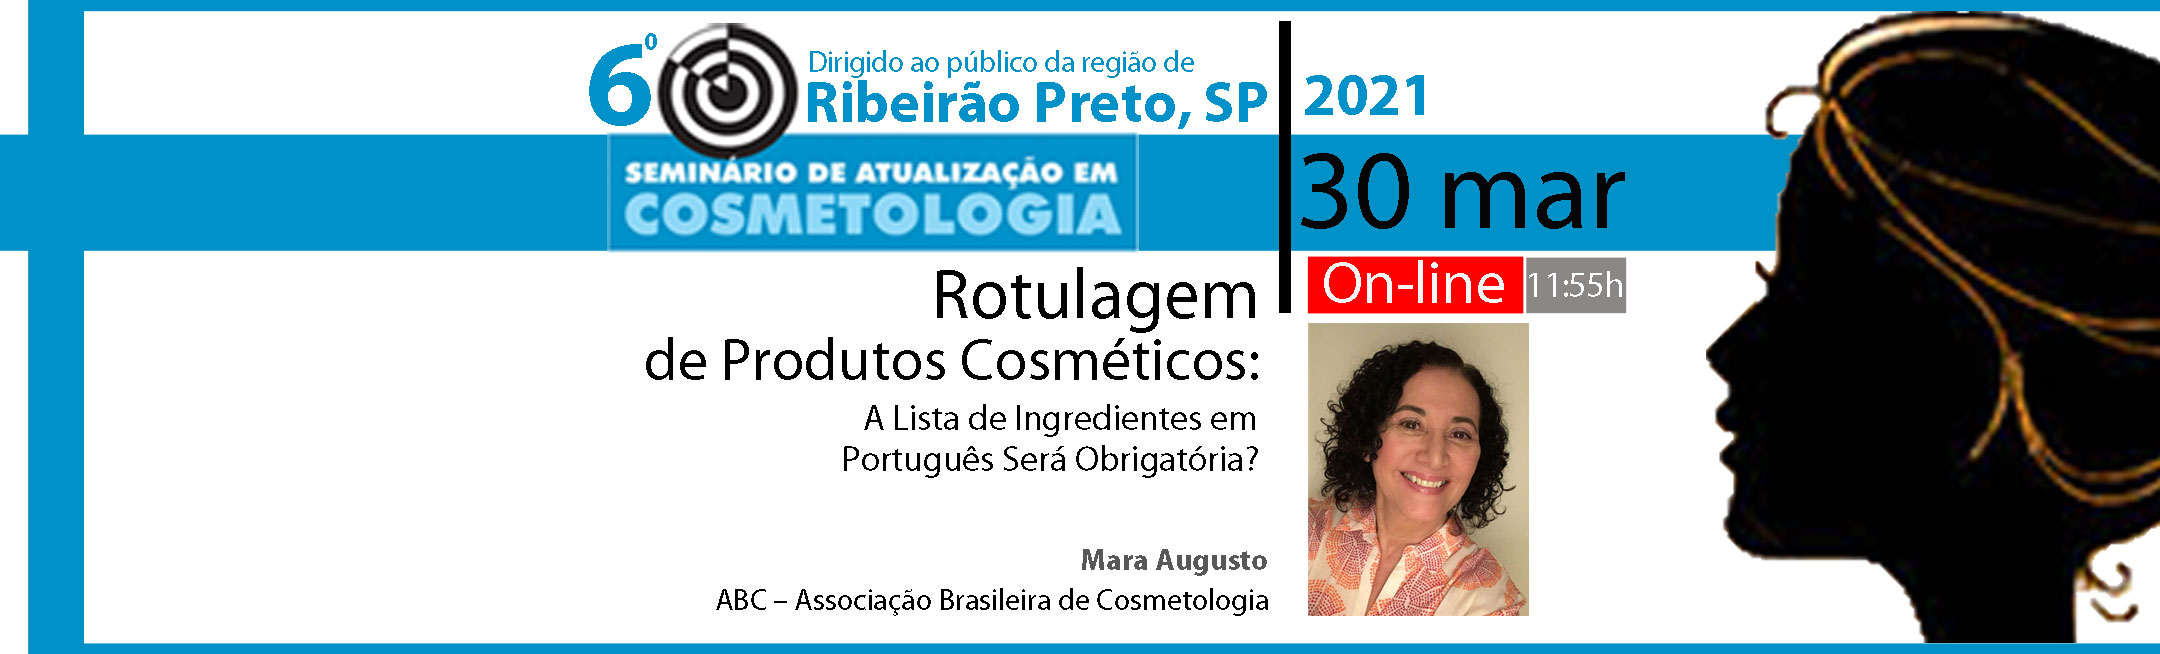 Rotulagem de Produtos Cosméticos: A Lista de Ingredientes em Português Será Obrigatória?